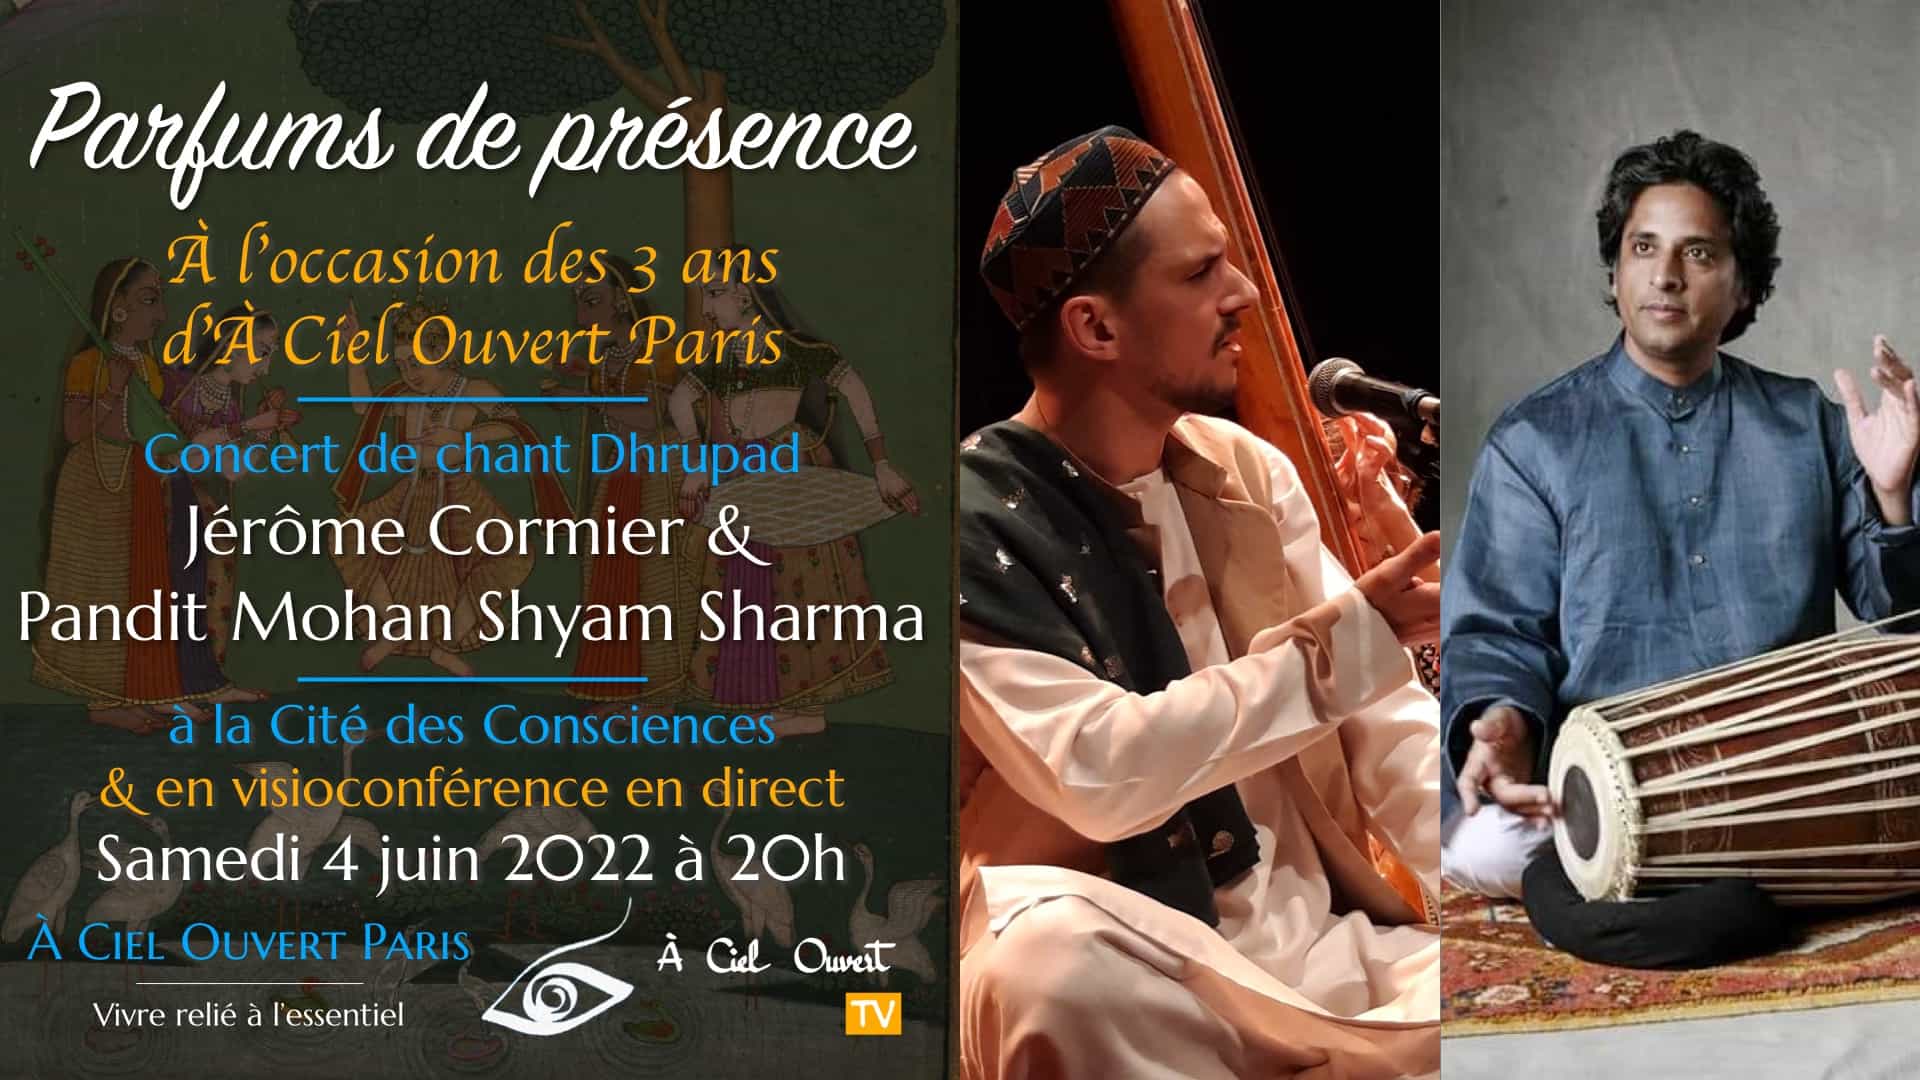 Parfums de présence – Concert Dhrupad – Jérôme Cormier & Pandit Mohan Shyam Sharma